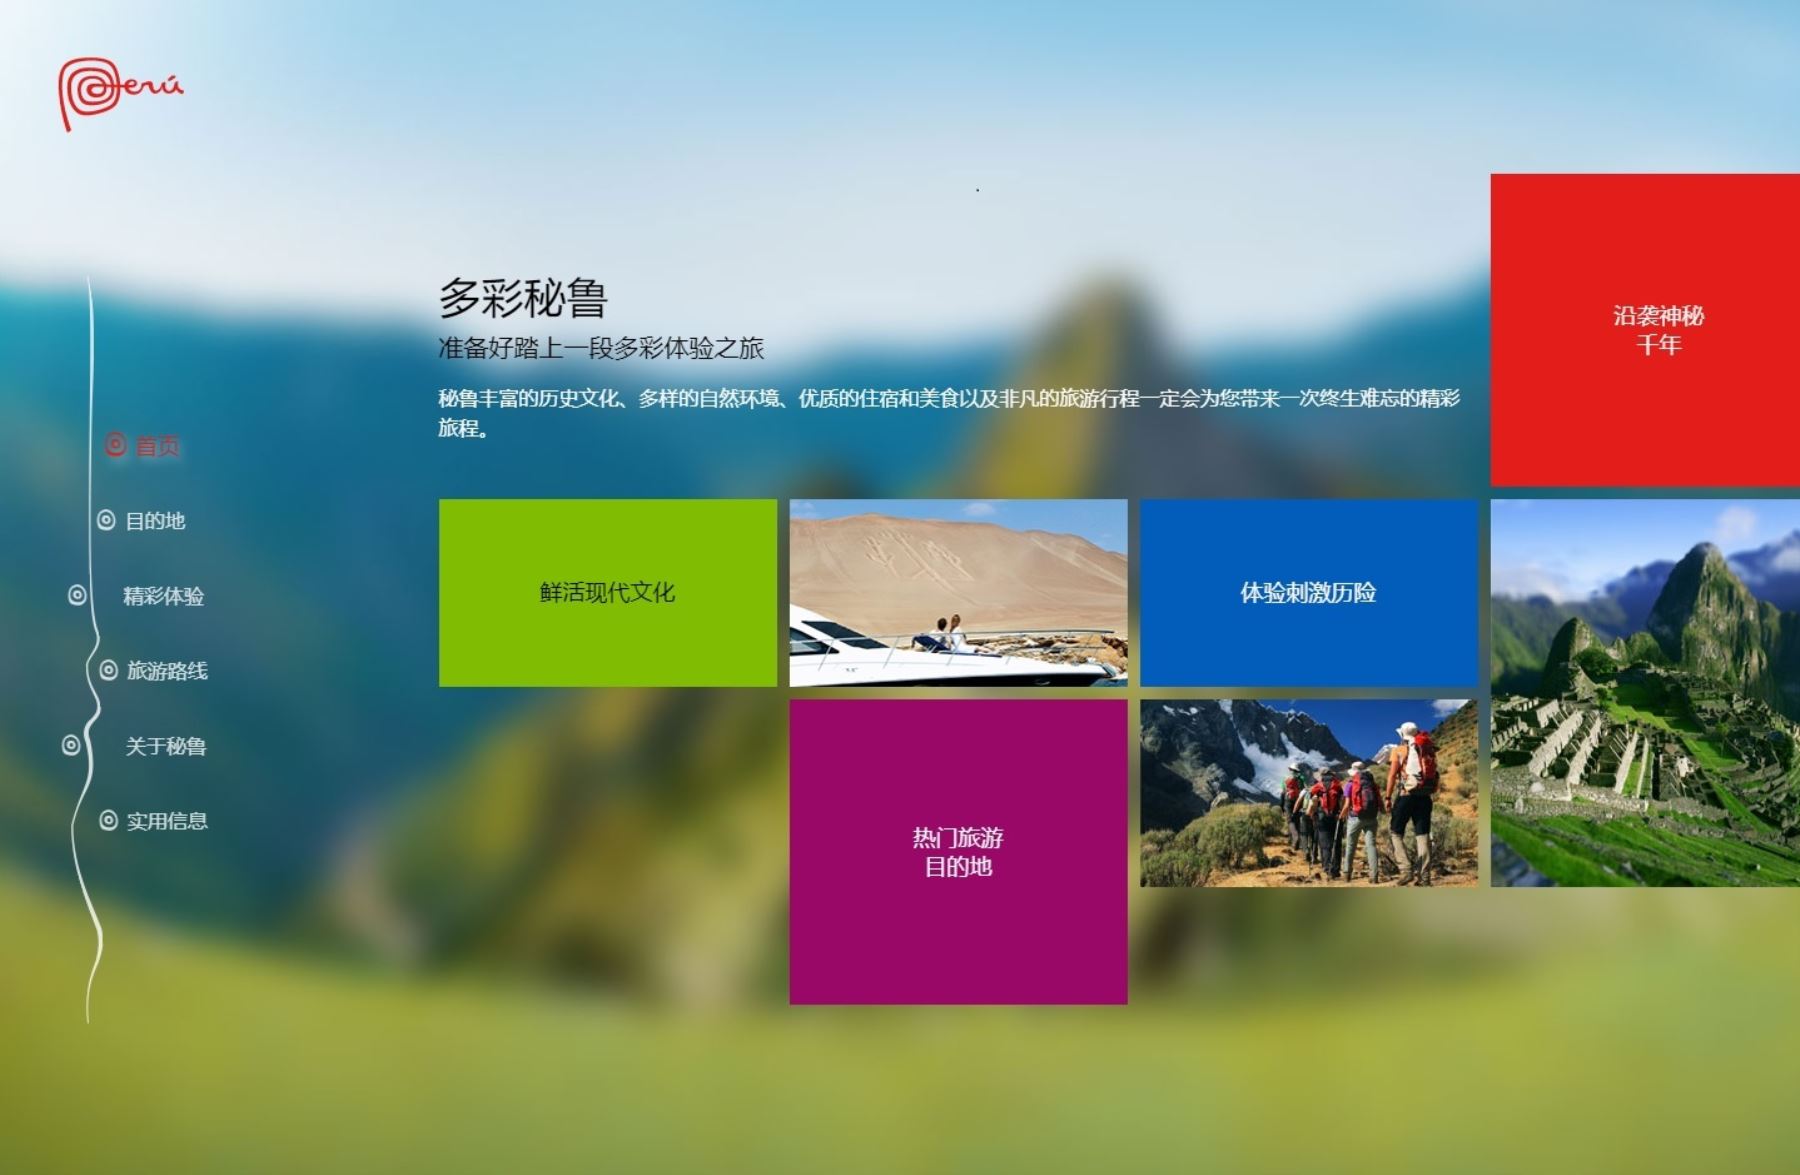 Los  contenidos de la website www.perutravel.cn están dirigidos a atender las demandas y preferencias del viajero chino.